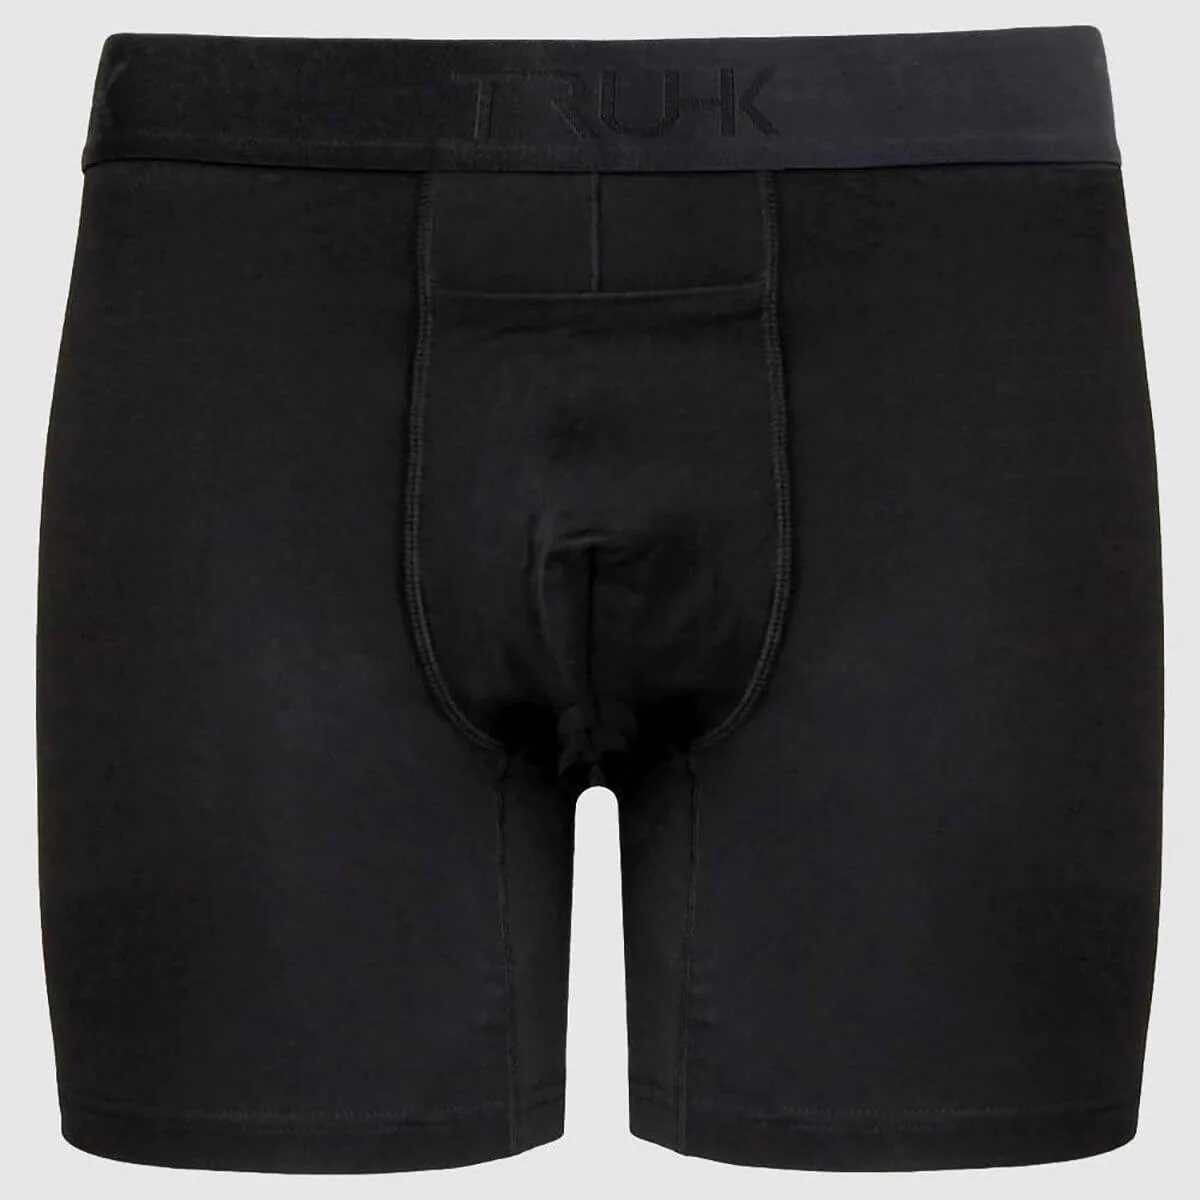 3 Best FTM Packer Underwear. FTM (female to male) packer underwear…, by  Emisil